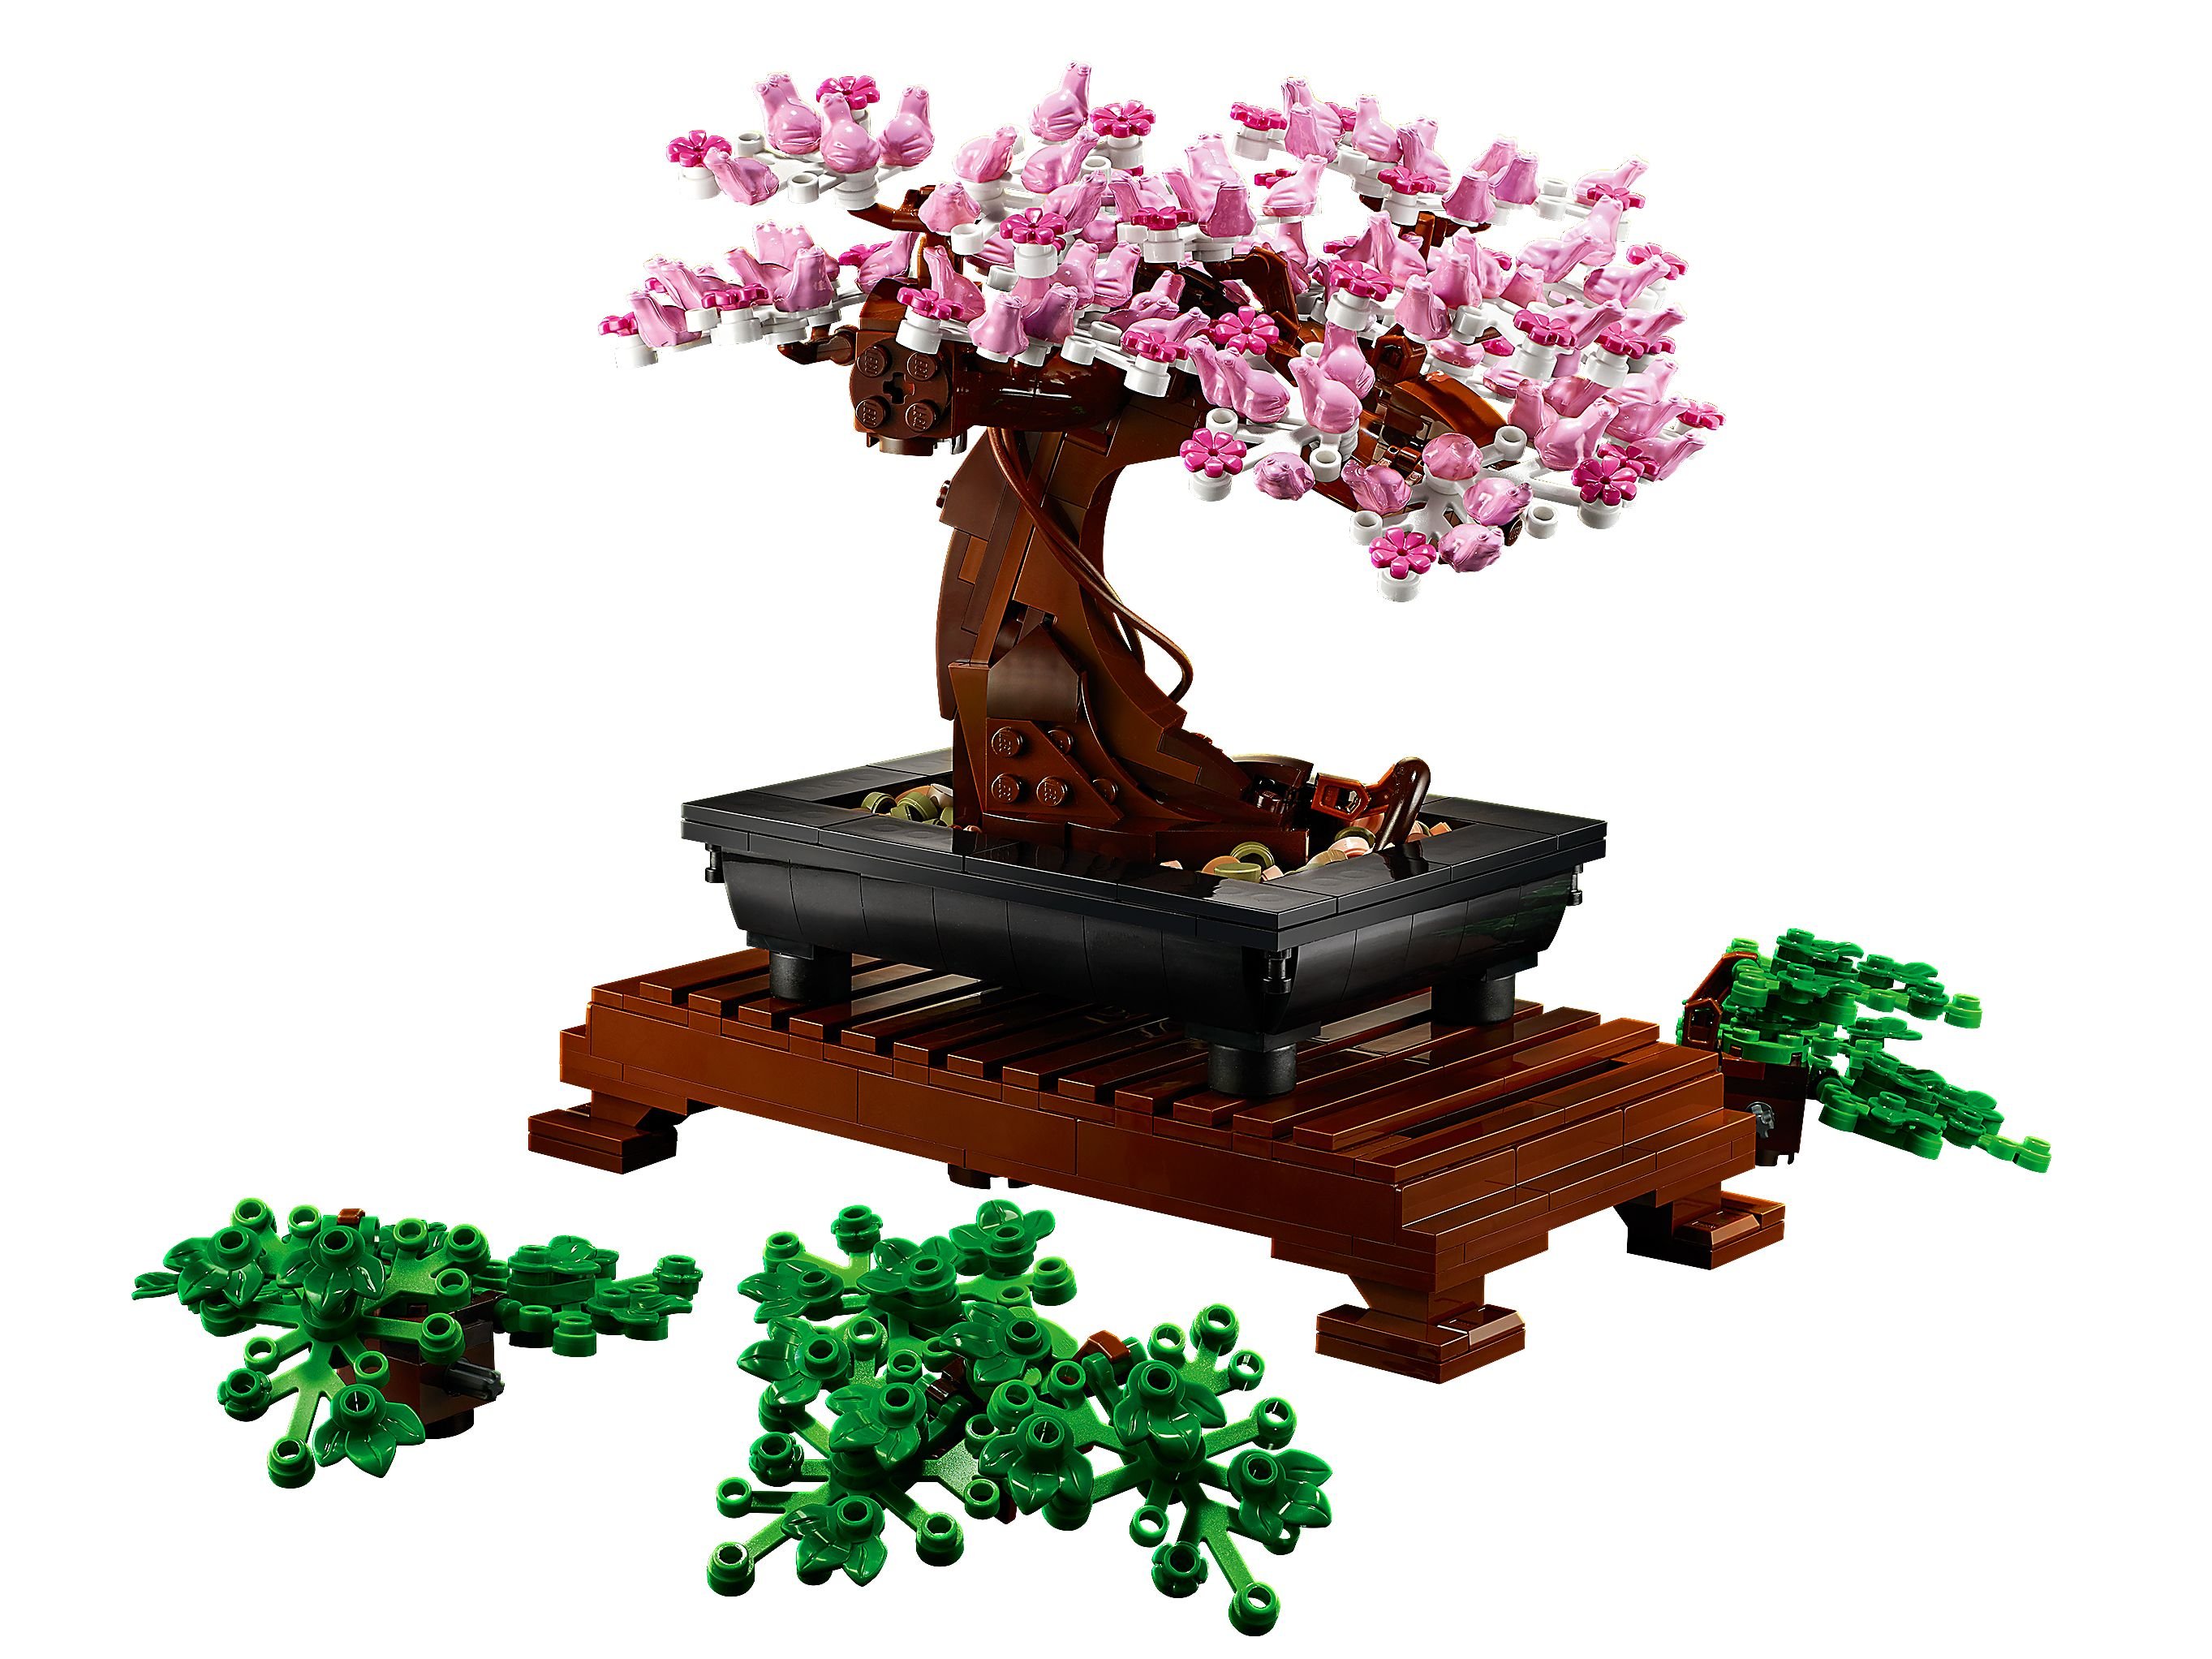 LEGO Advanced Models 10281 Bonsai Baum LEGO_10281_alt4.jpg